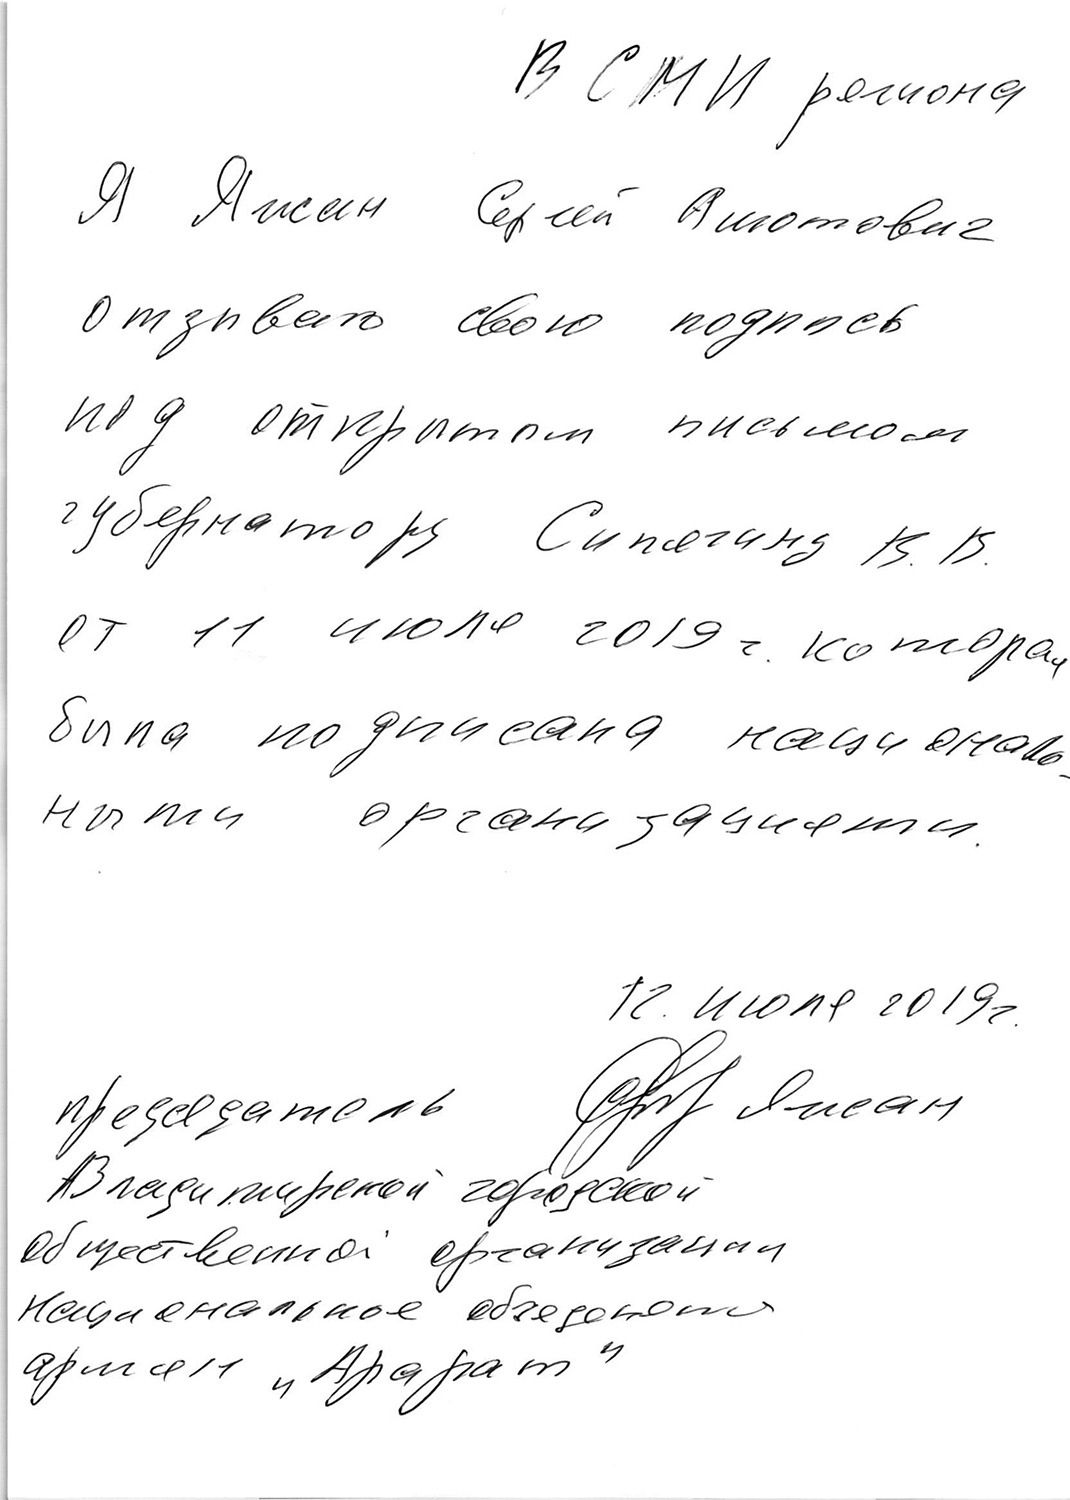 Образец подписи заявления